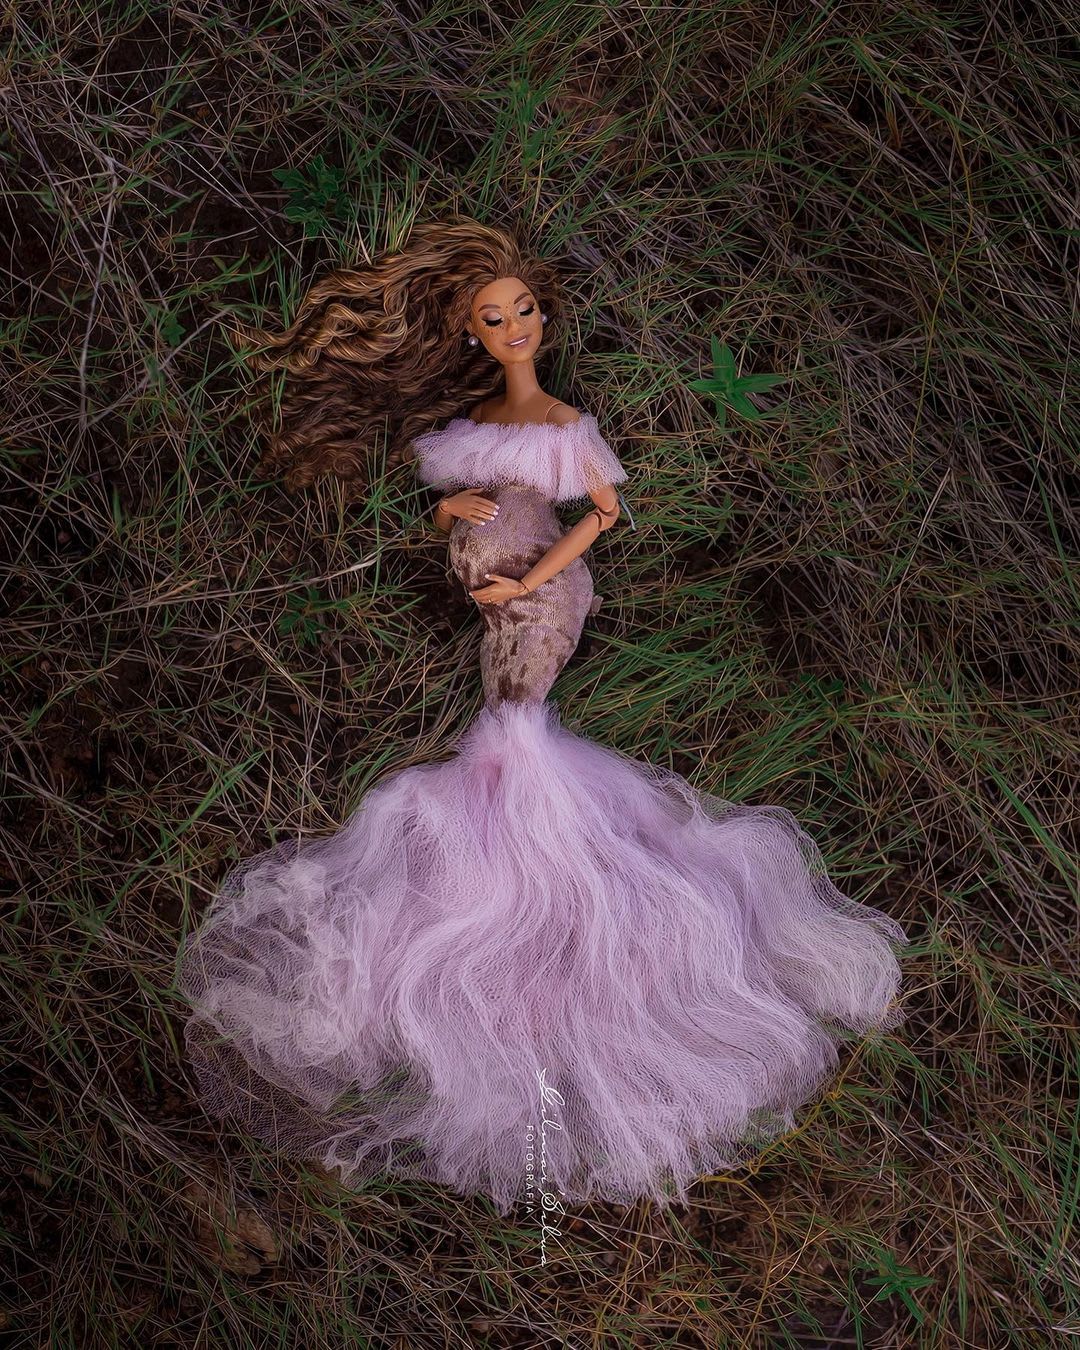 Fotógrafo faz ensaio com Barbie gestante e recria poses icônicas